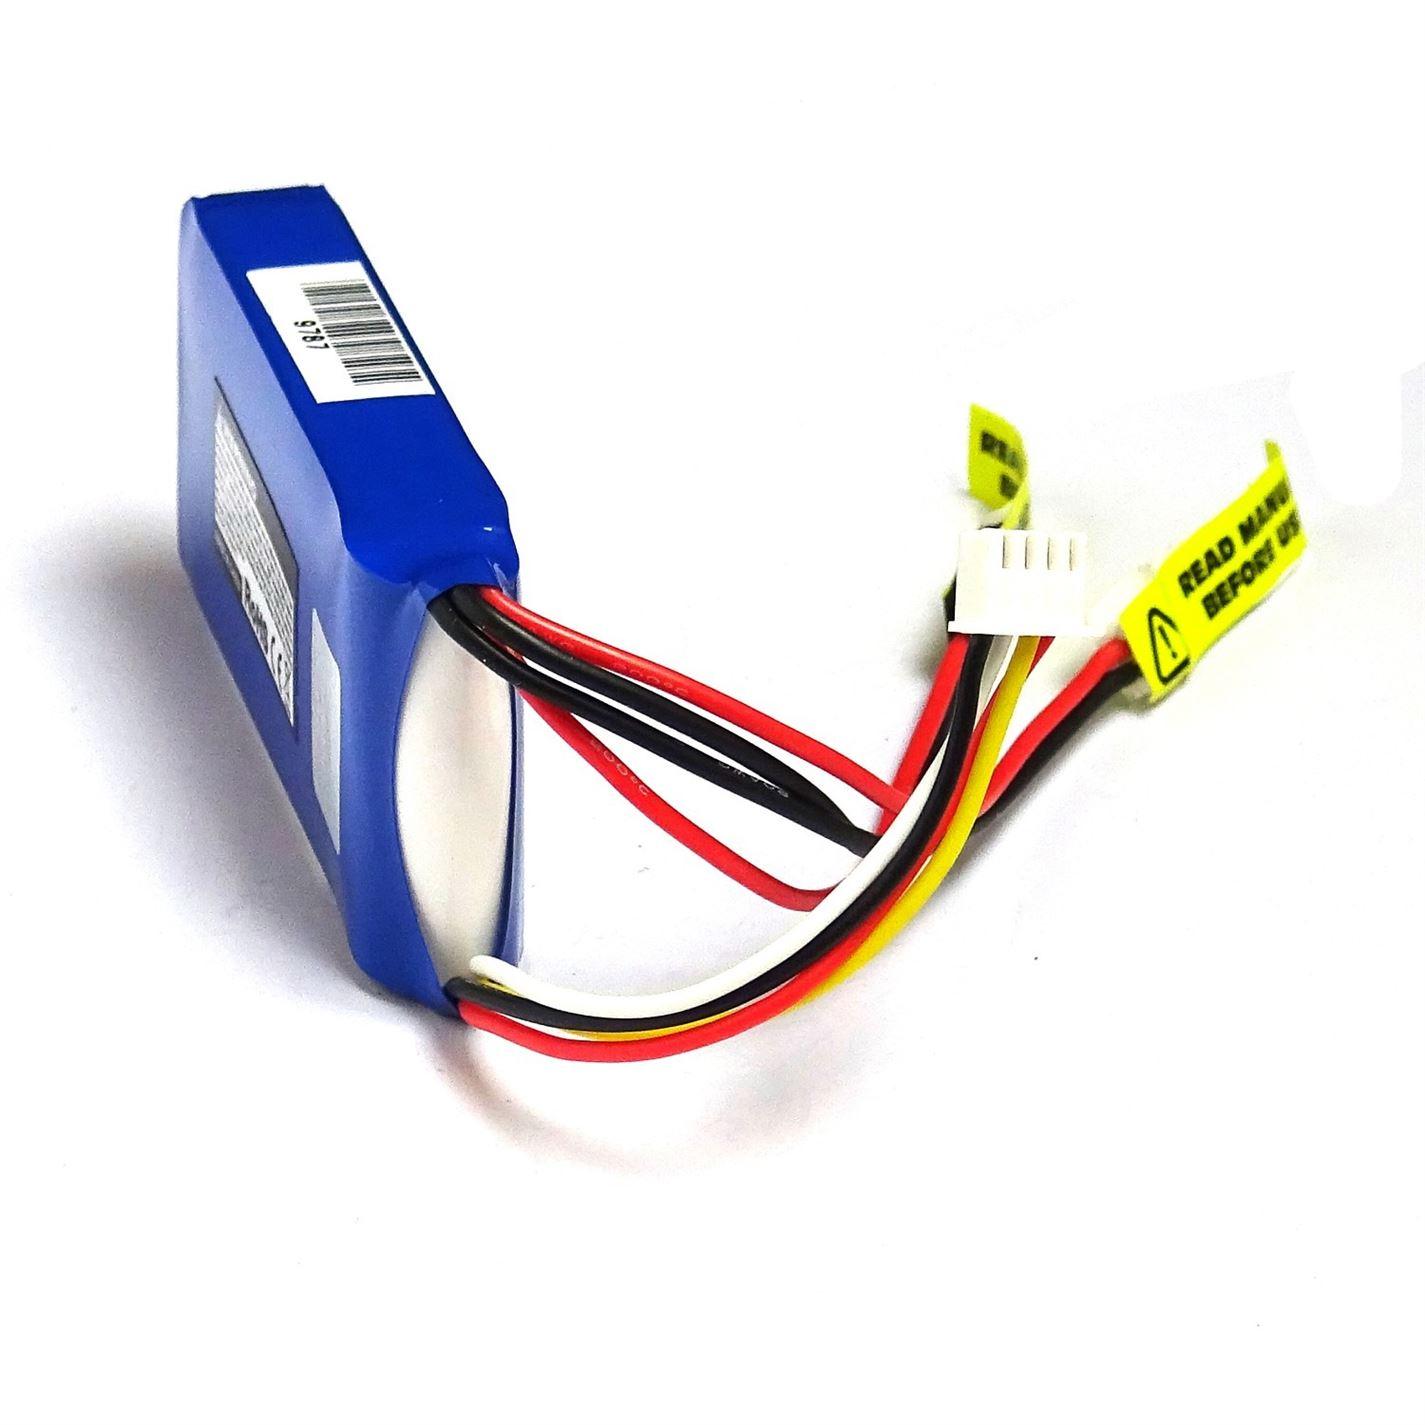 Turnigy 1450mAh 3S Transmitter Lipoly Battery Pack - UK Seller